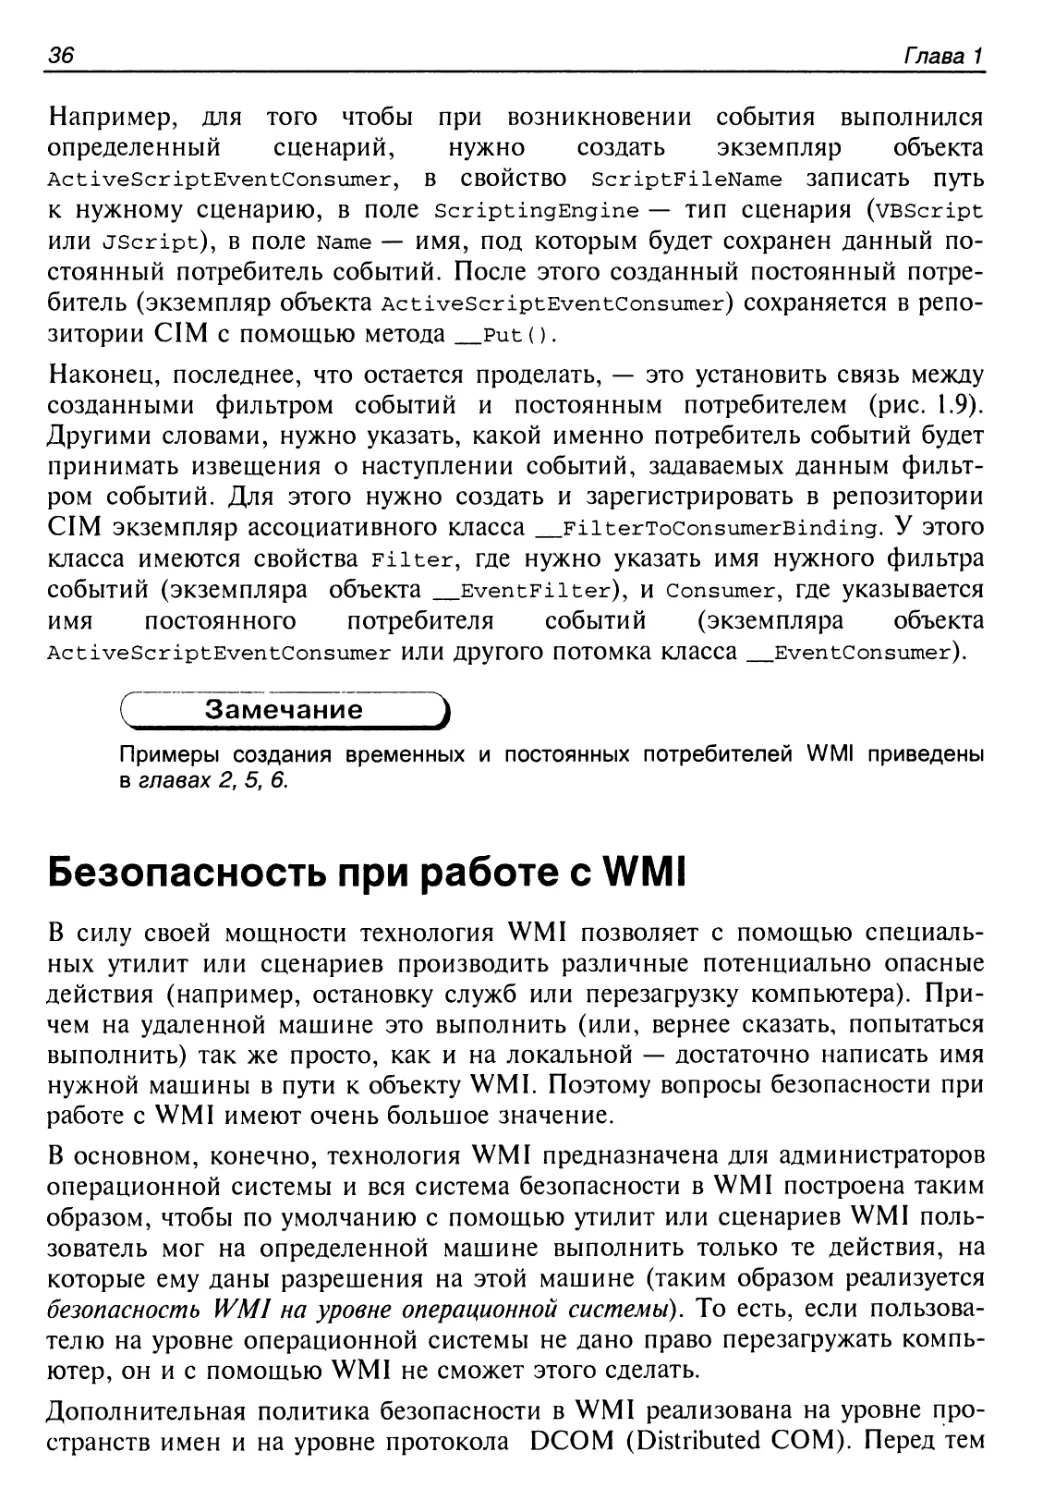 Безопасность при работе с WMI